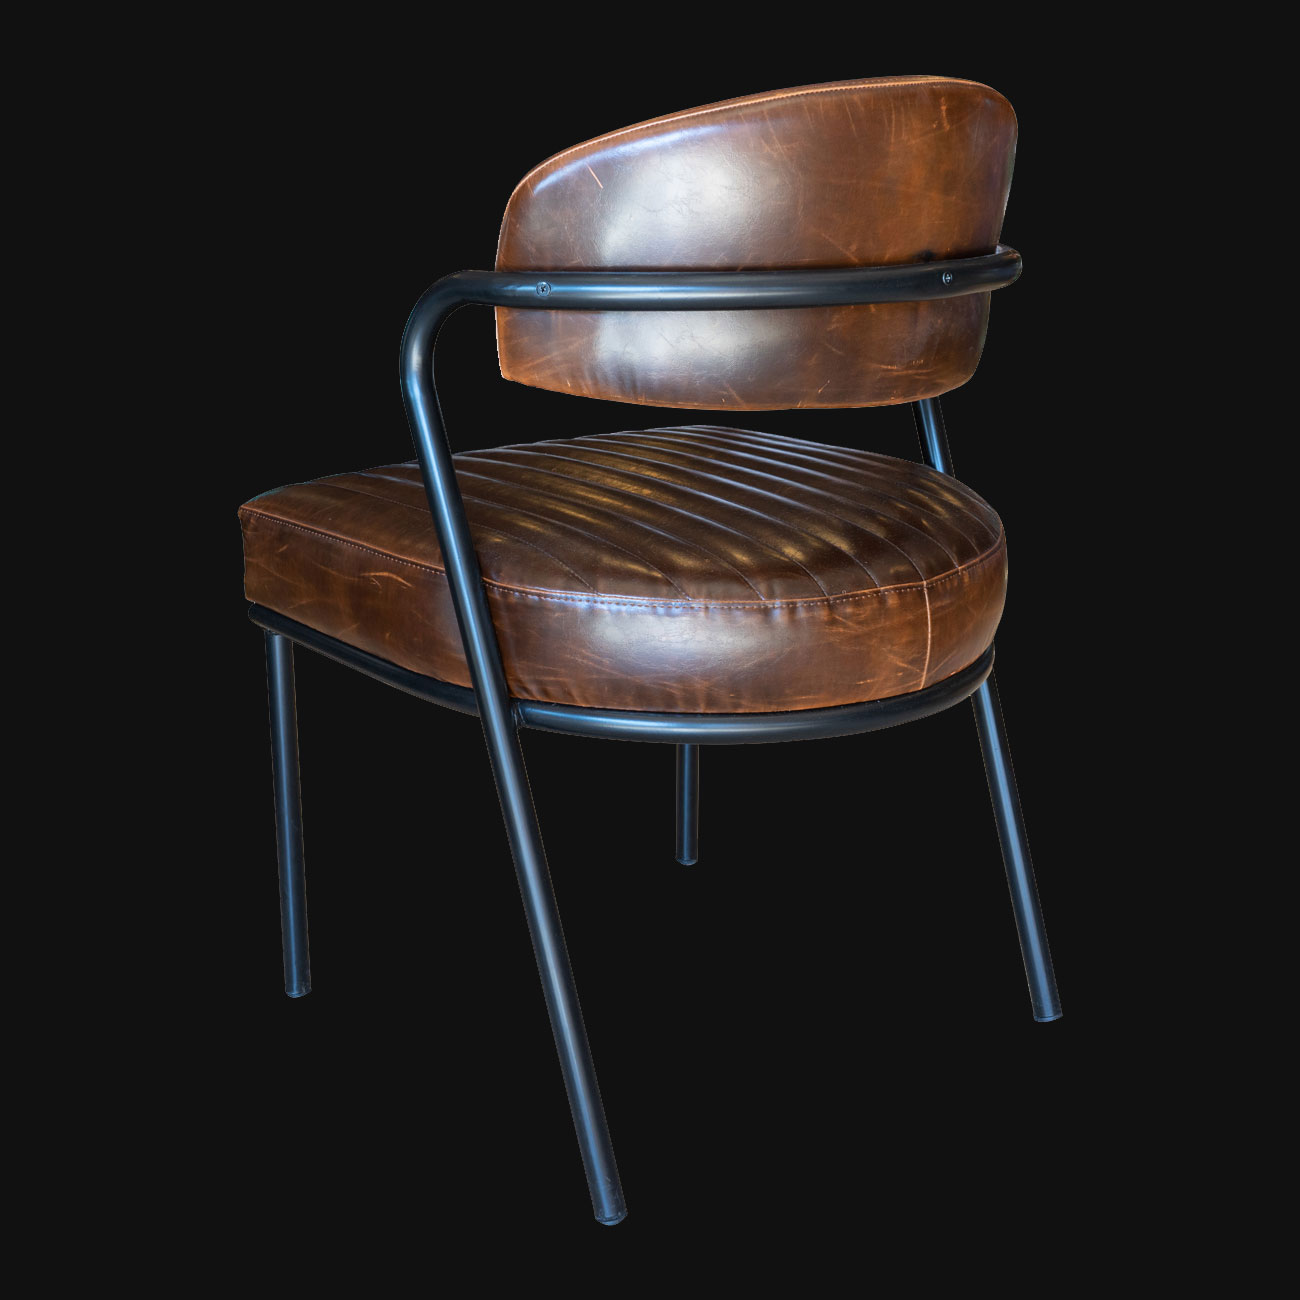 demir ayaklı sandalye modelleri, cafe sandalyesi modelleri,modern cafe sandalyeleri